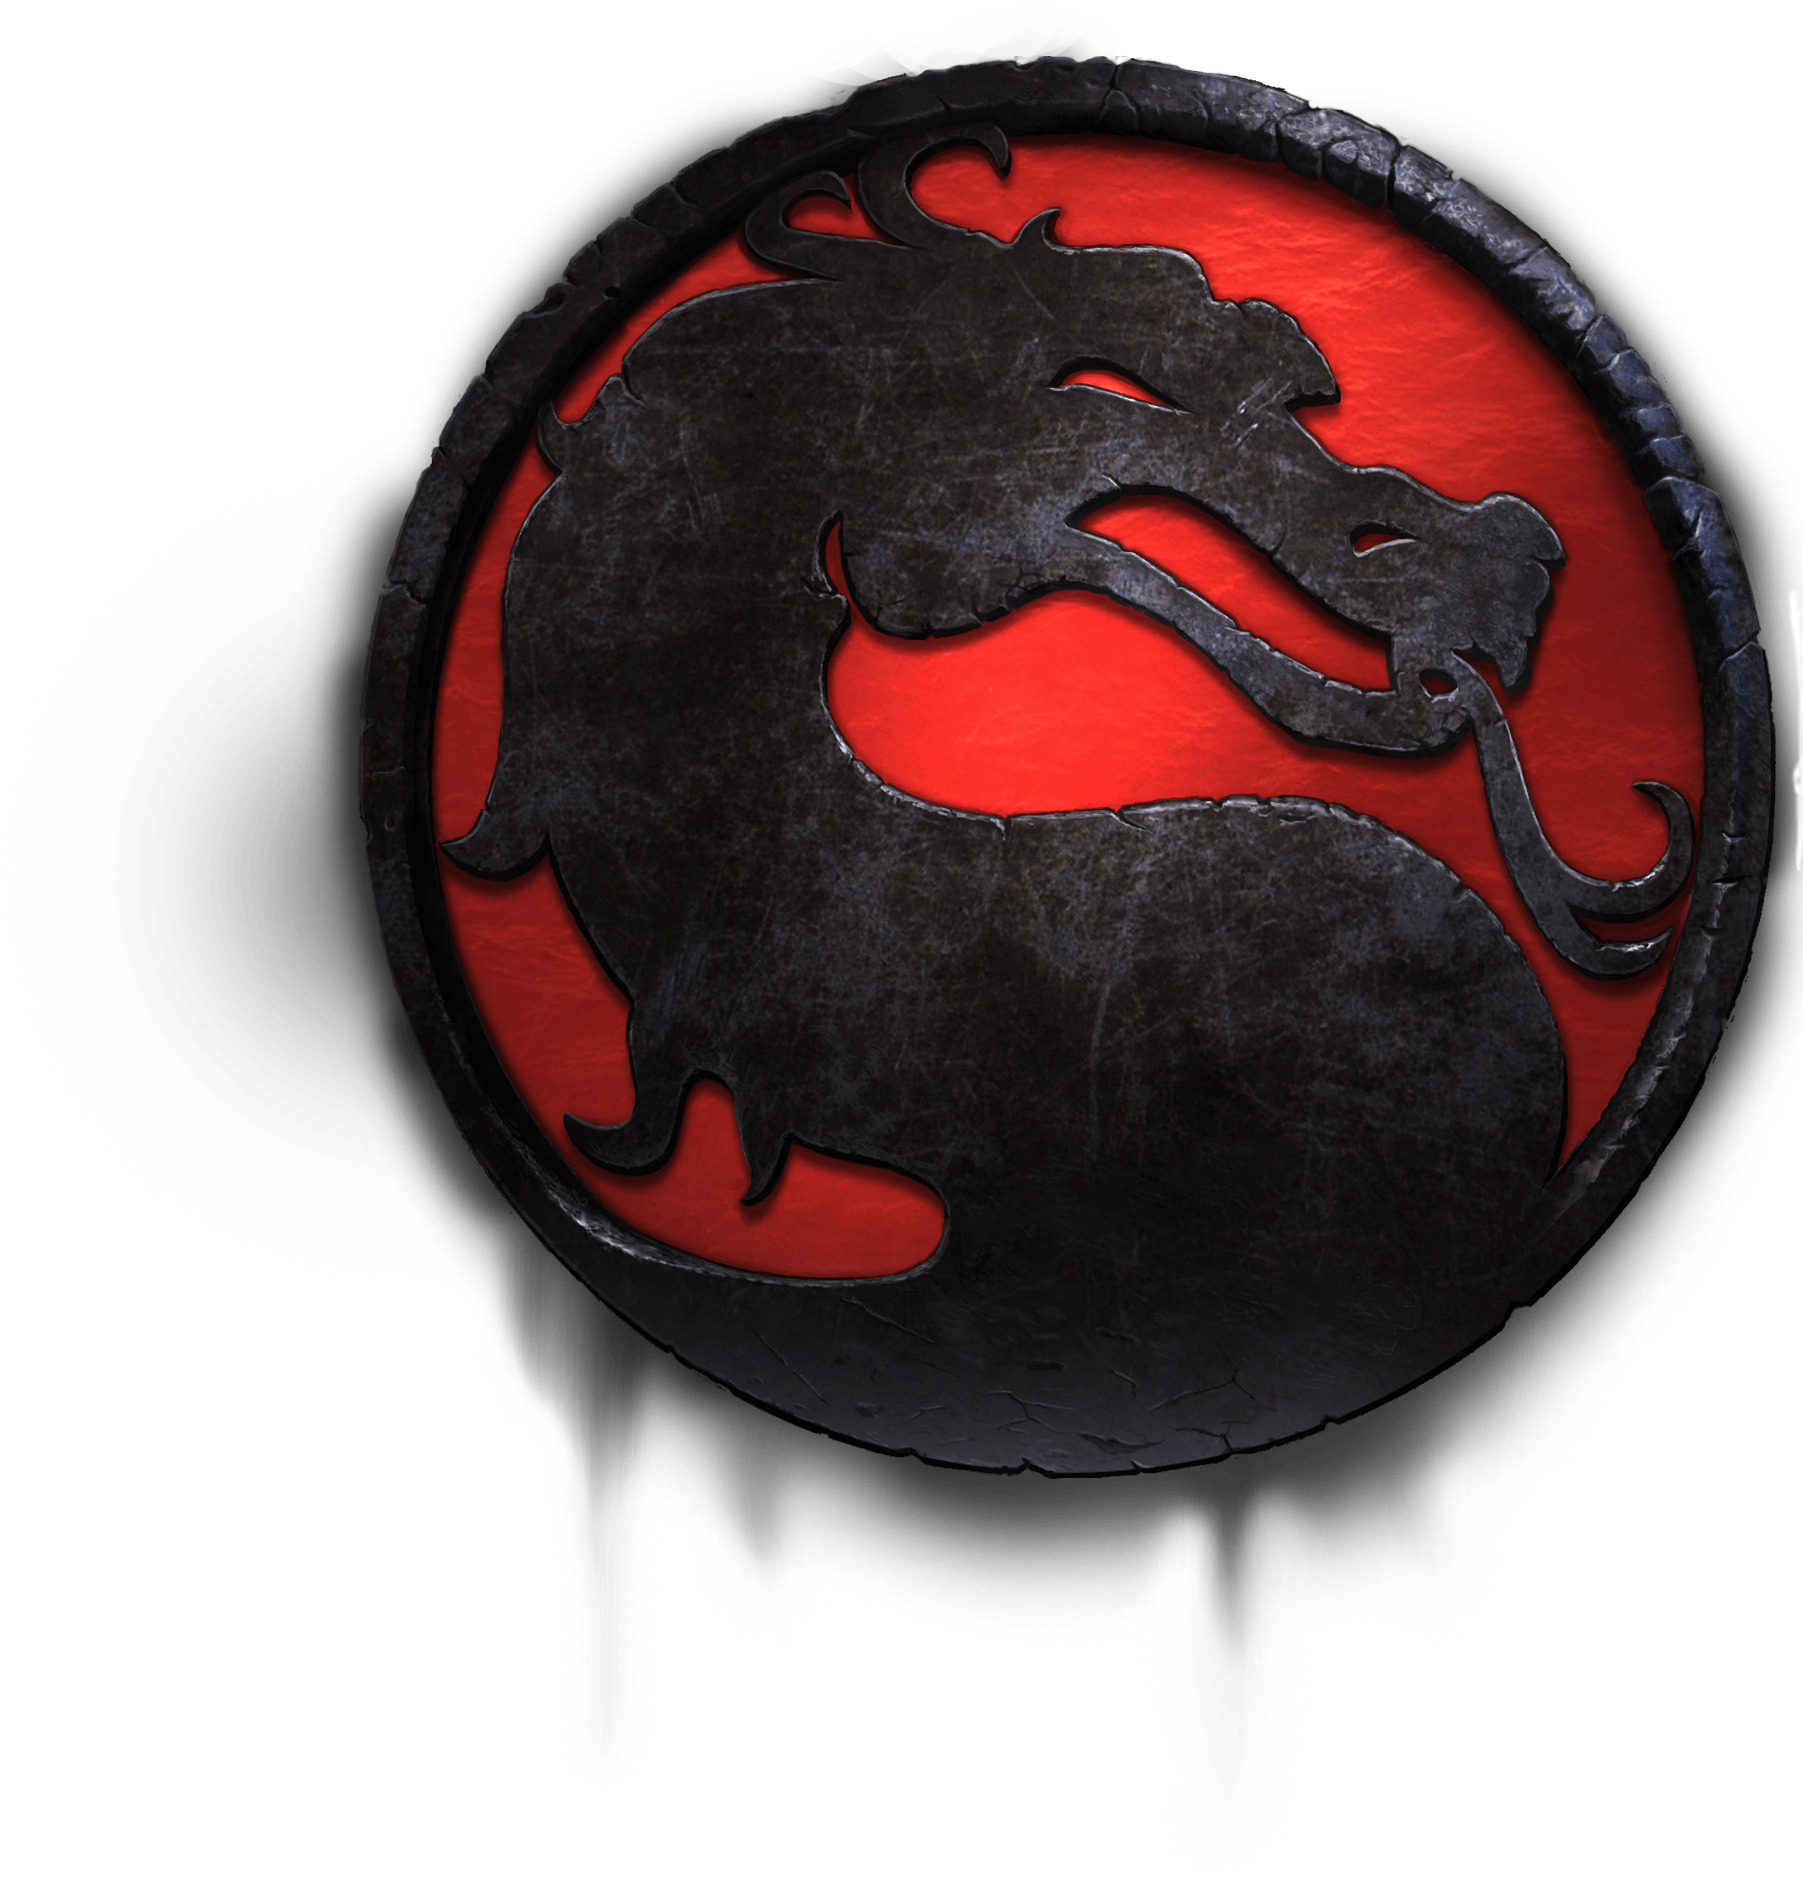 Mortal Kombat Logo - Mortal Kombat PNG image free download